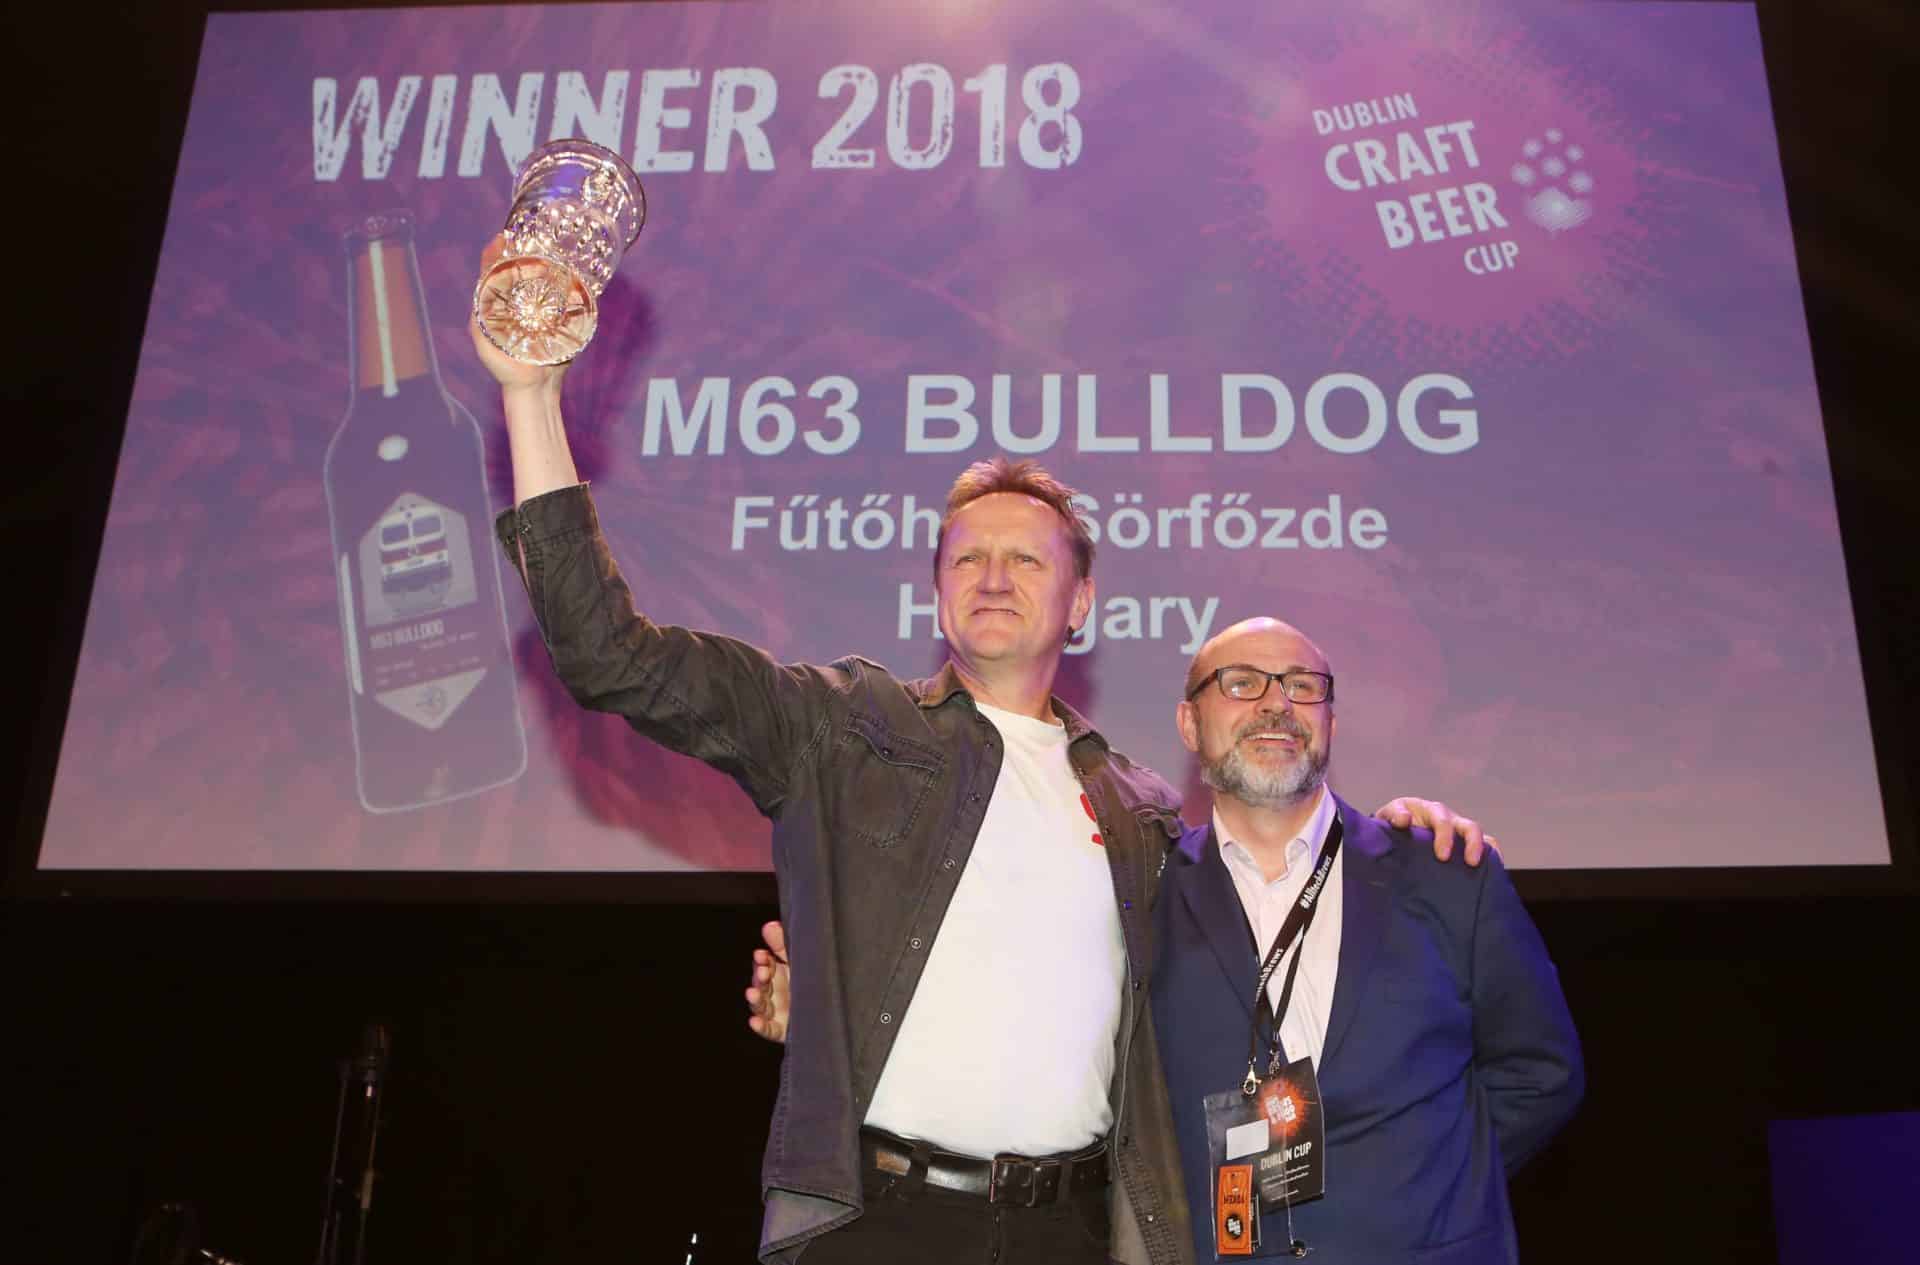 Fűtőház kézműves sörfőzde - M63 Bulldog - Dublin Craft Beer Cup aranyérem